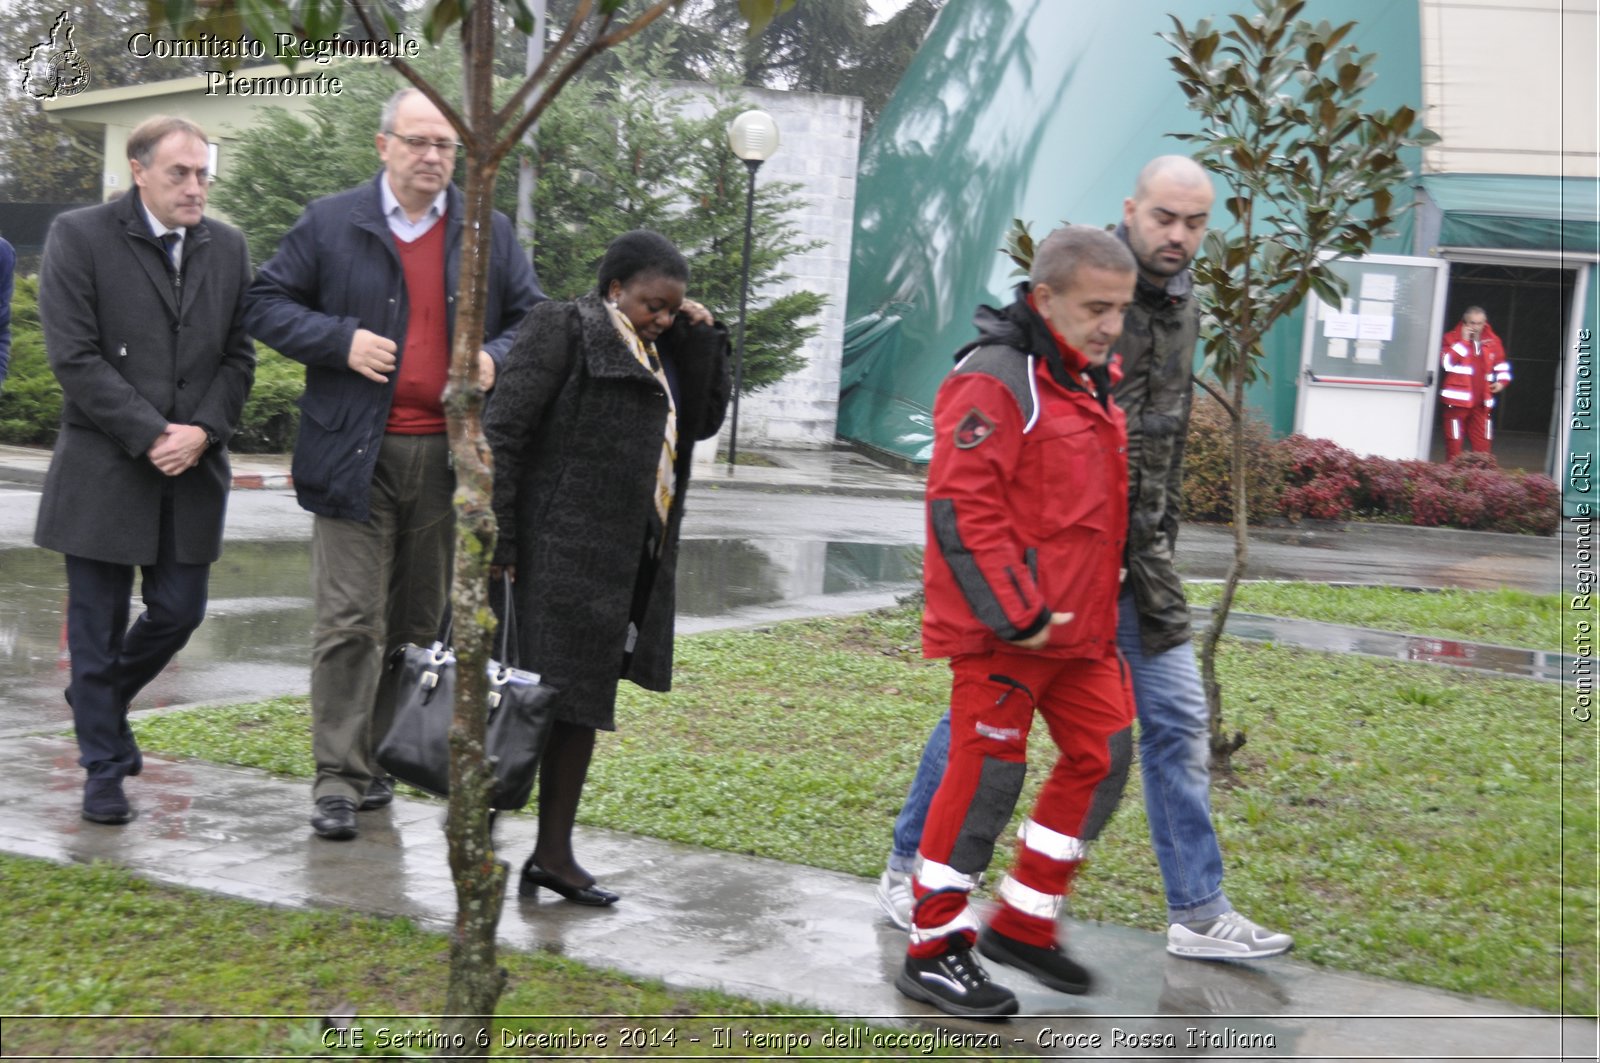 CIE Settimo 6 Dicembre 2014 - Il tempo dell'accoglienza - Croce Rossa Italiana- Comitato Regionale del Piemonte